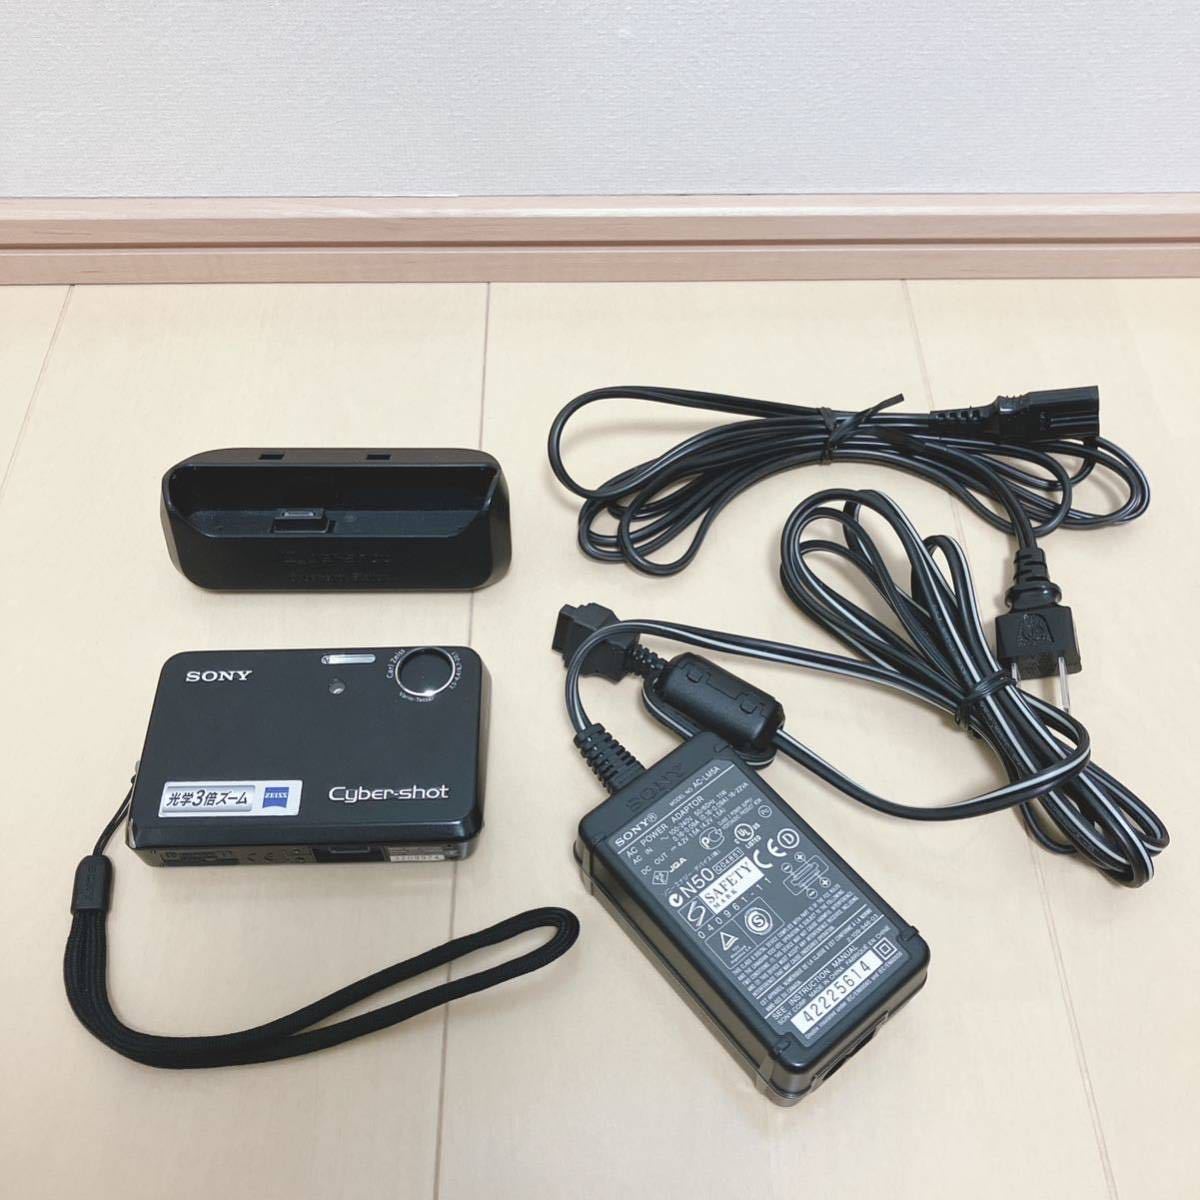 SONY Cyber-shot デジカメ DSC-T3 充電器付 デジタルカメラ ソニー サイバーショット ブラック ジャンク品の画像1